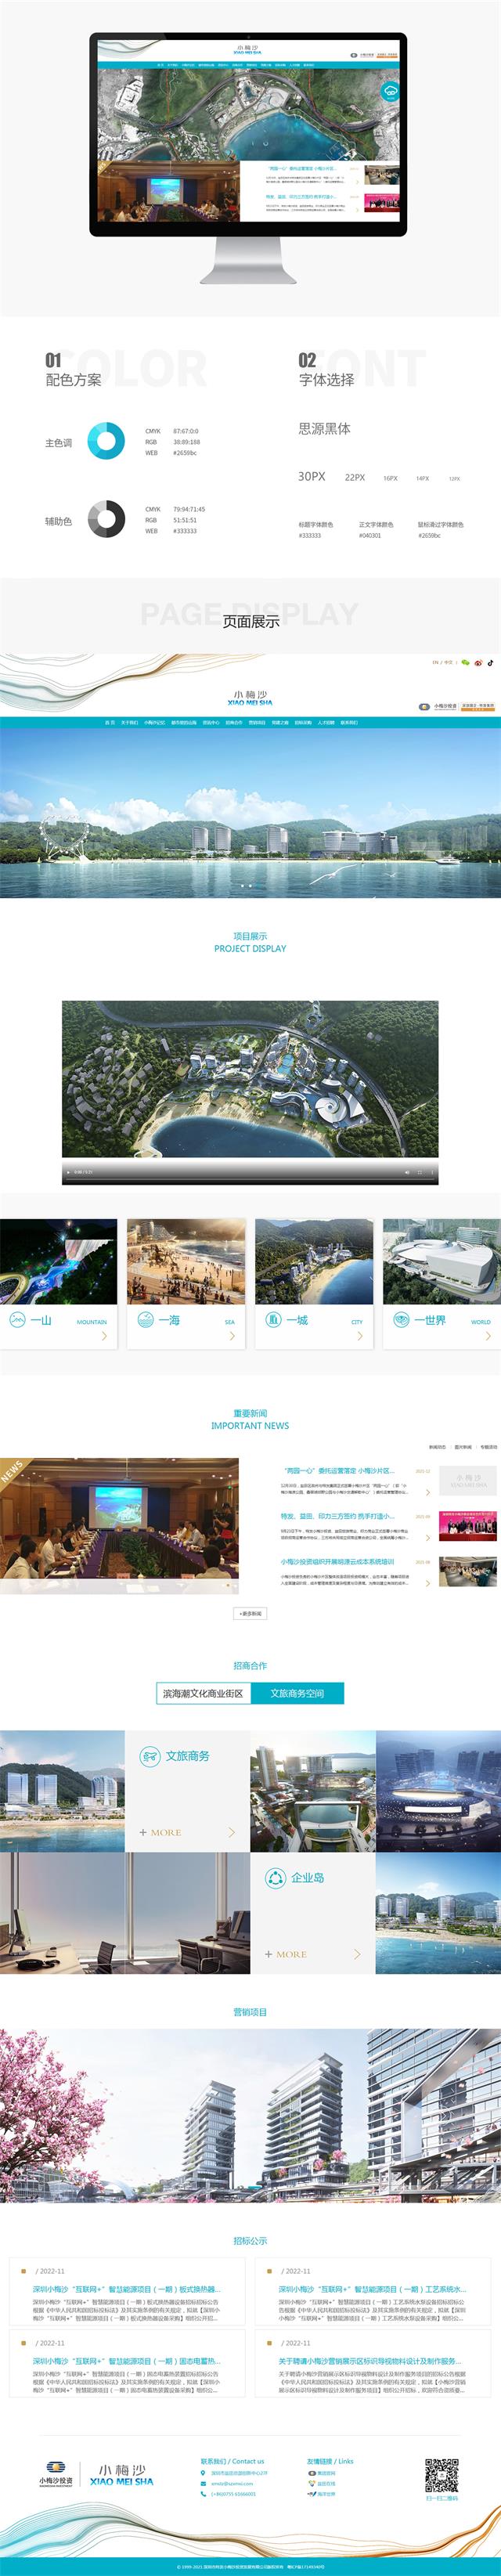 小梅沙文化旅游公司网站建设案例